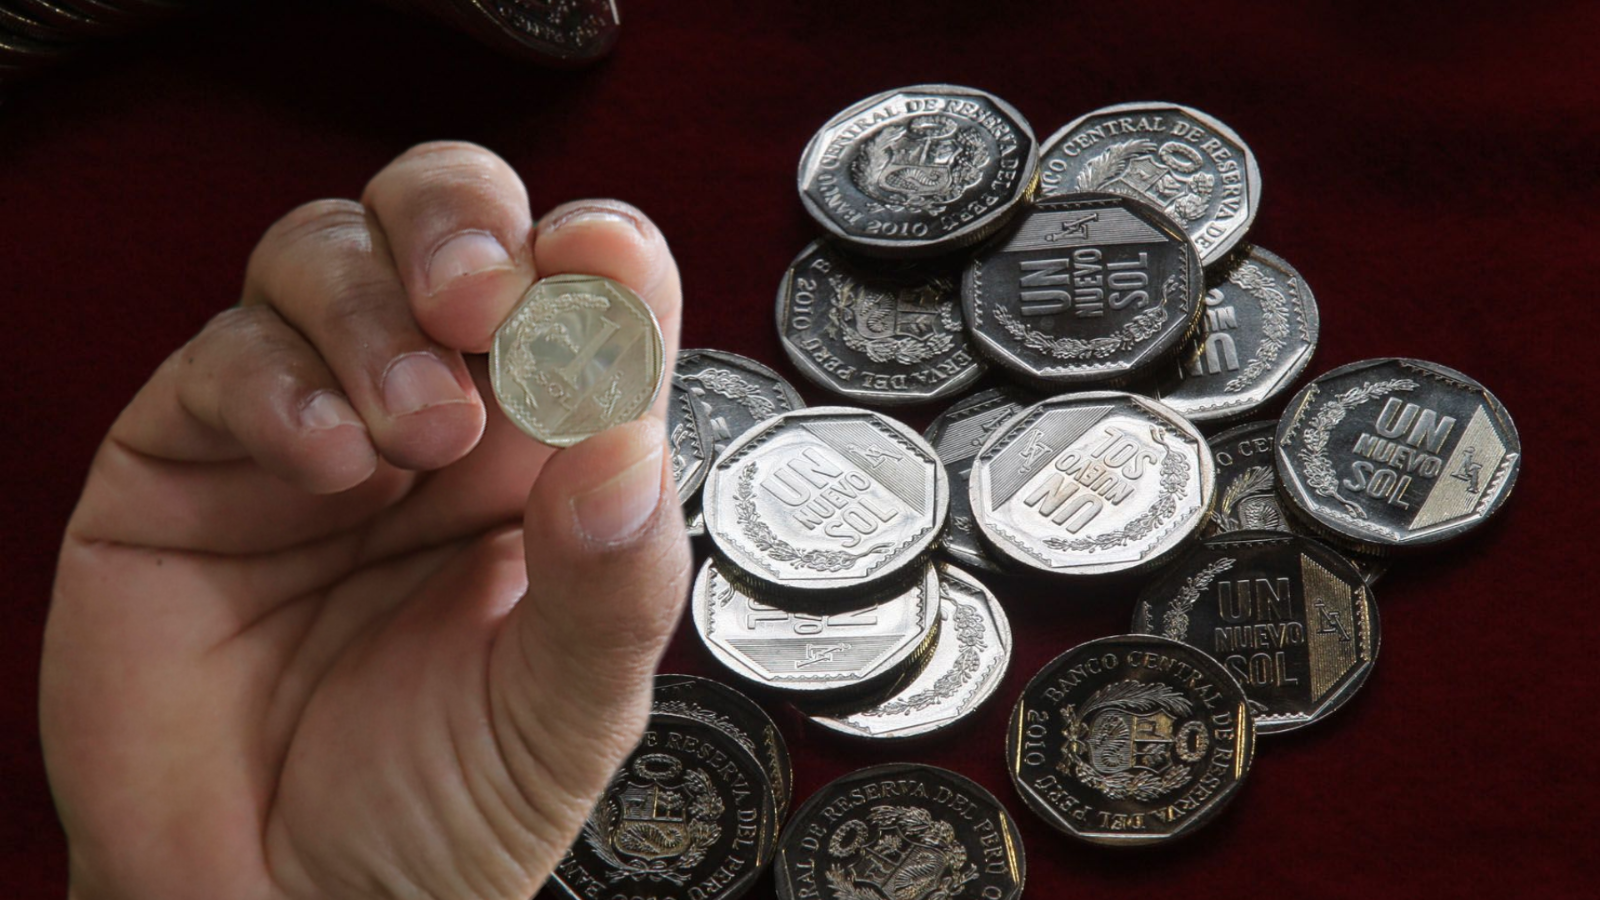 Moneda de colección se vende en hasta 90 mil pesos ¿La tienes?